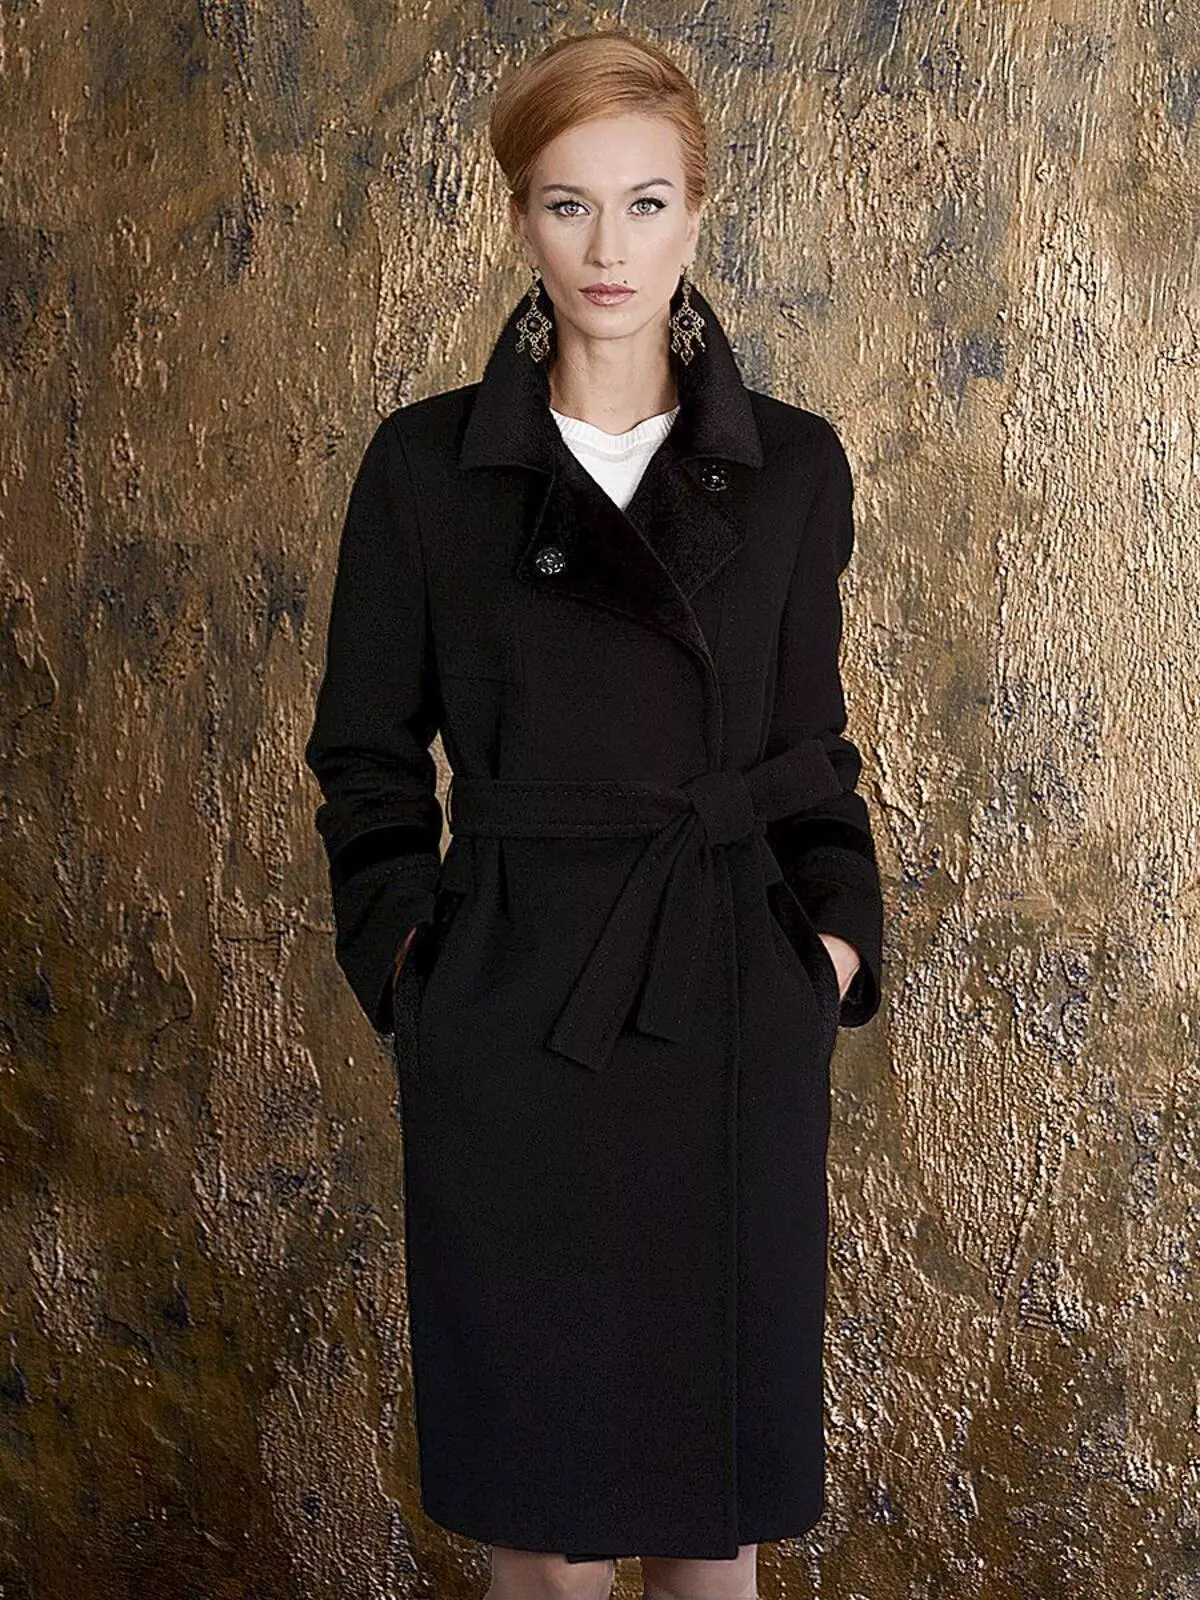 Female frakke Spring 2021 (356 Billeder): Fra russiske producenter, modeller, stilarter og stilarter, quiltet, kort, dæmpning, læder 623_100